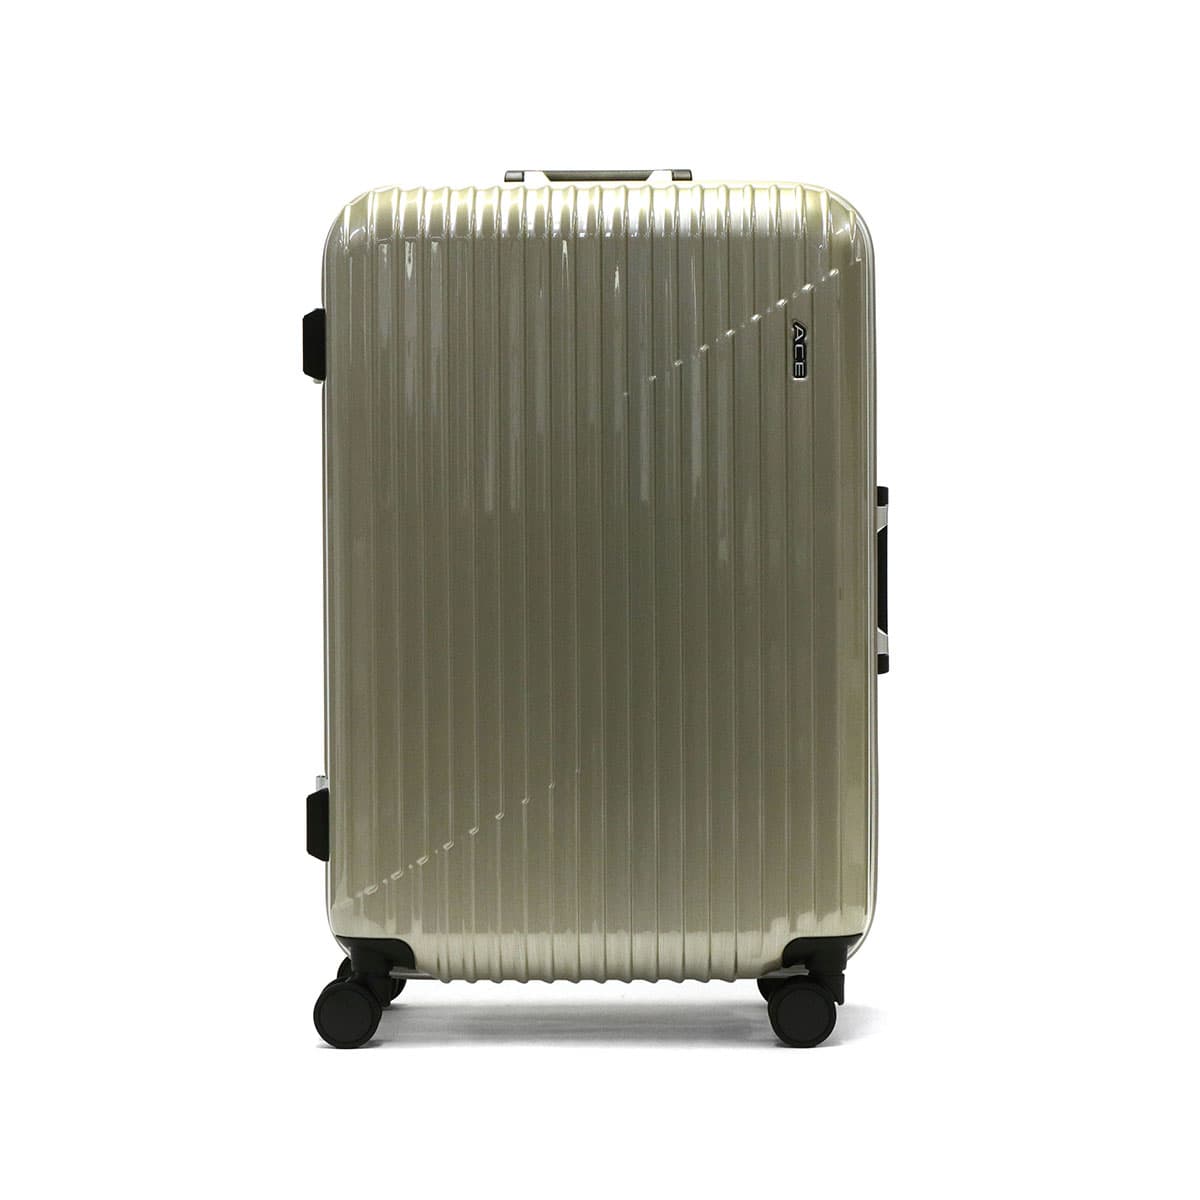 MINI3205様専用[エース] スーツケース クレス70L(拡張時) 61cm-